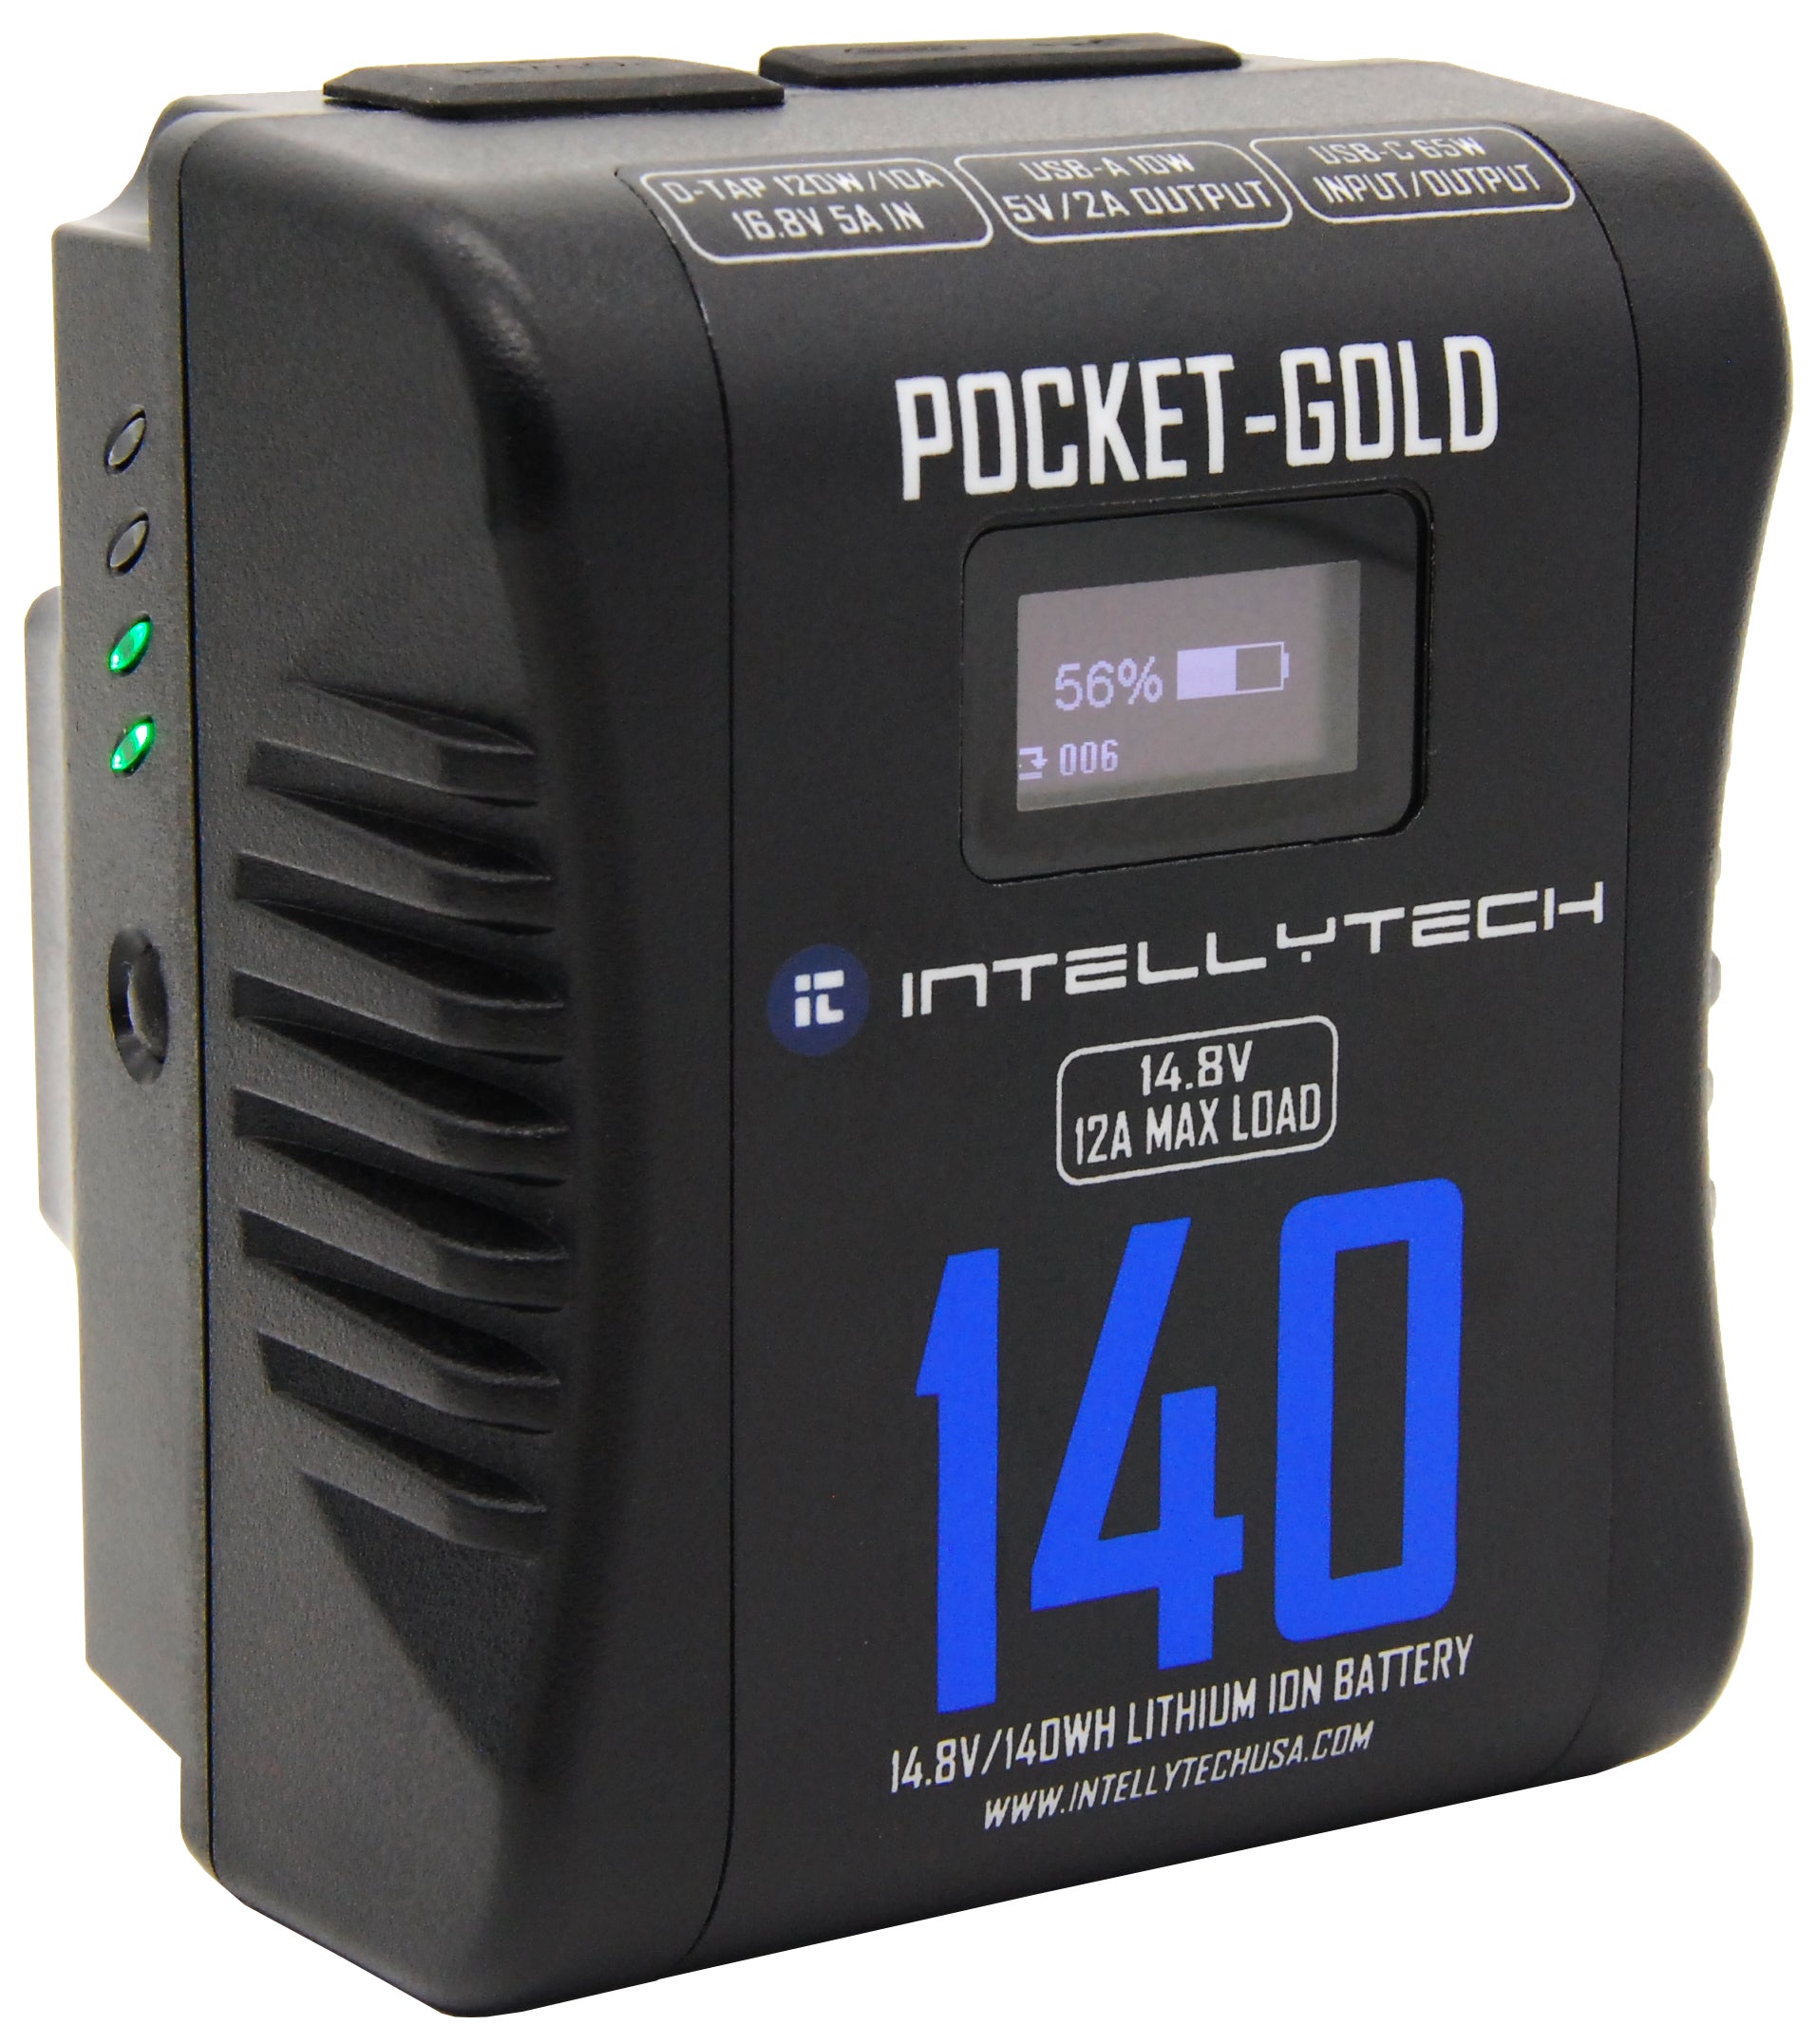 Pocket-Gold | 140Wh | Gold Mount Battery